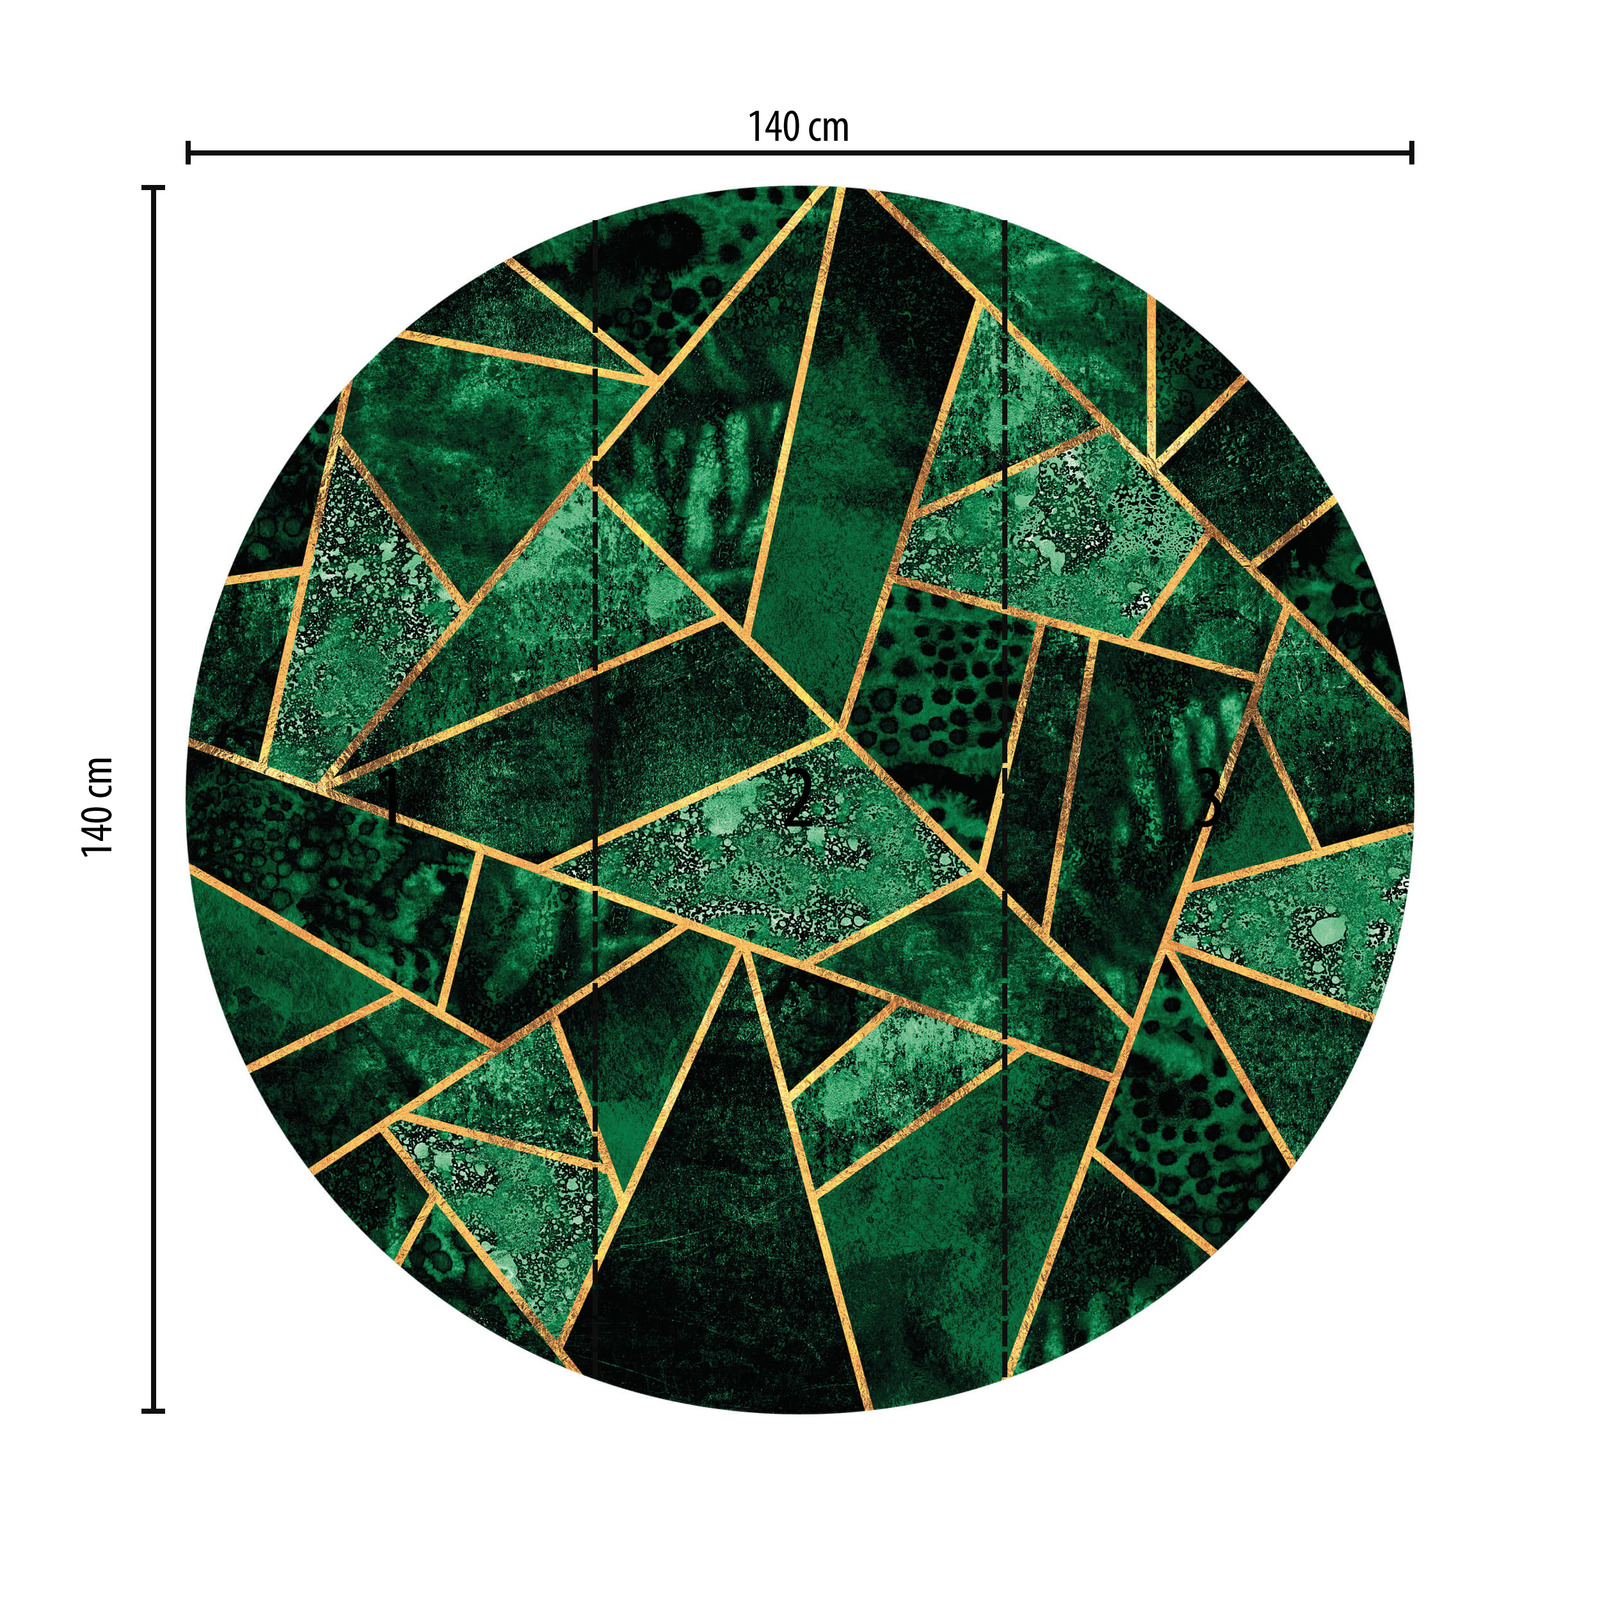             Papier peint panoramique rond formes géométriques, vert
        